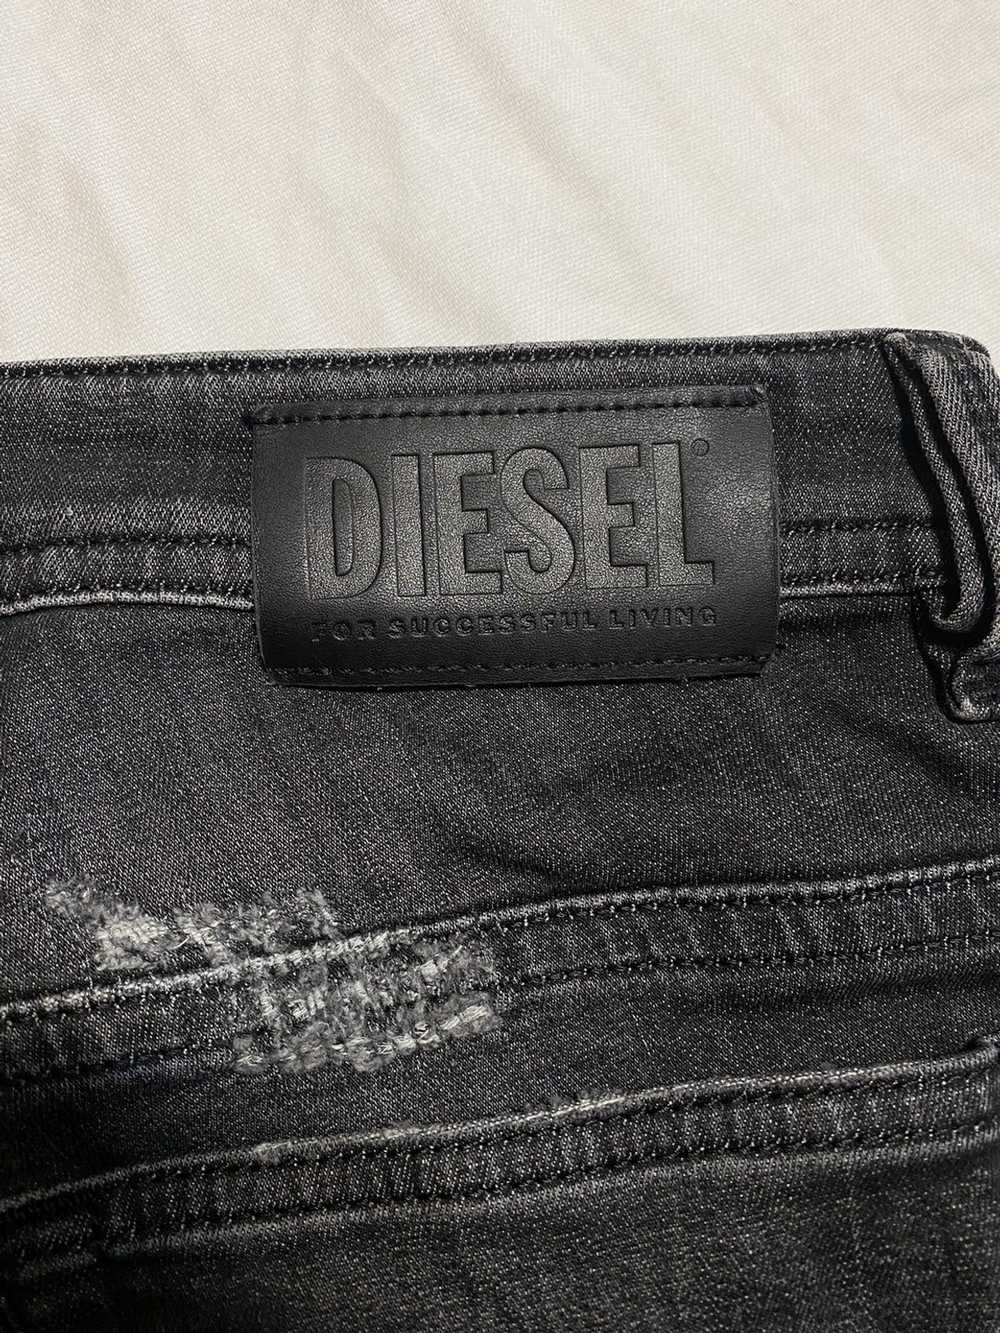 Diesel × Distressed Denim × Streetwear Diesel dis… - image 6